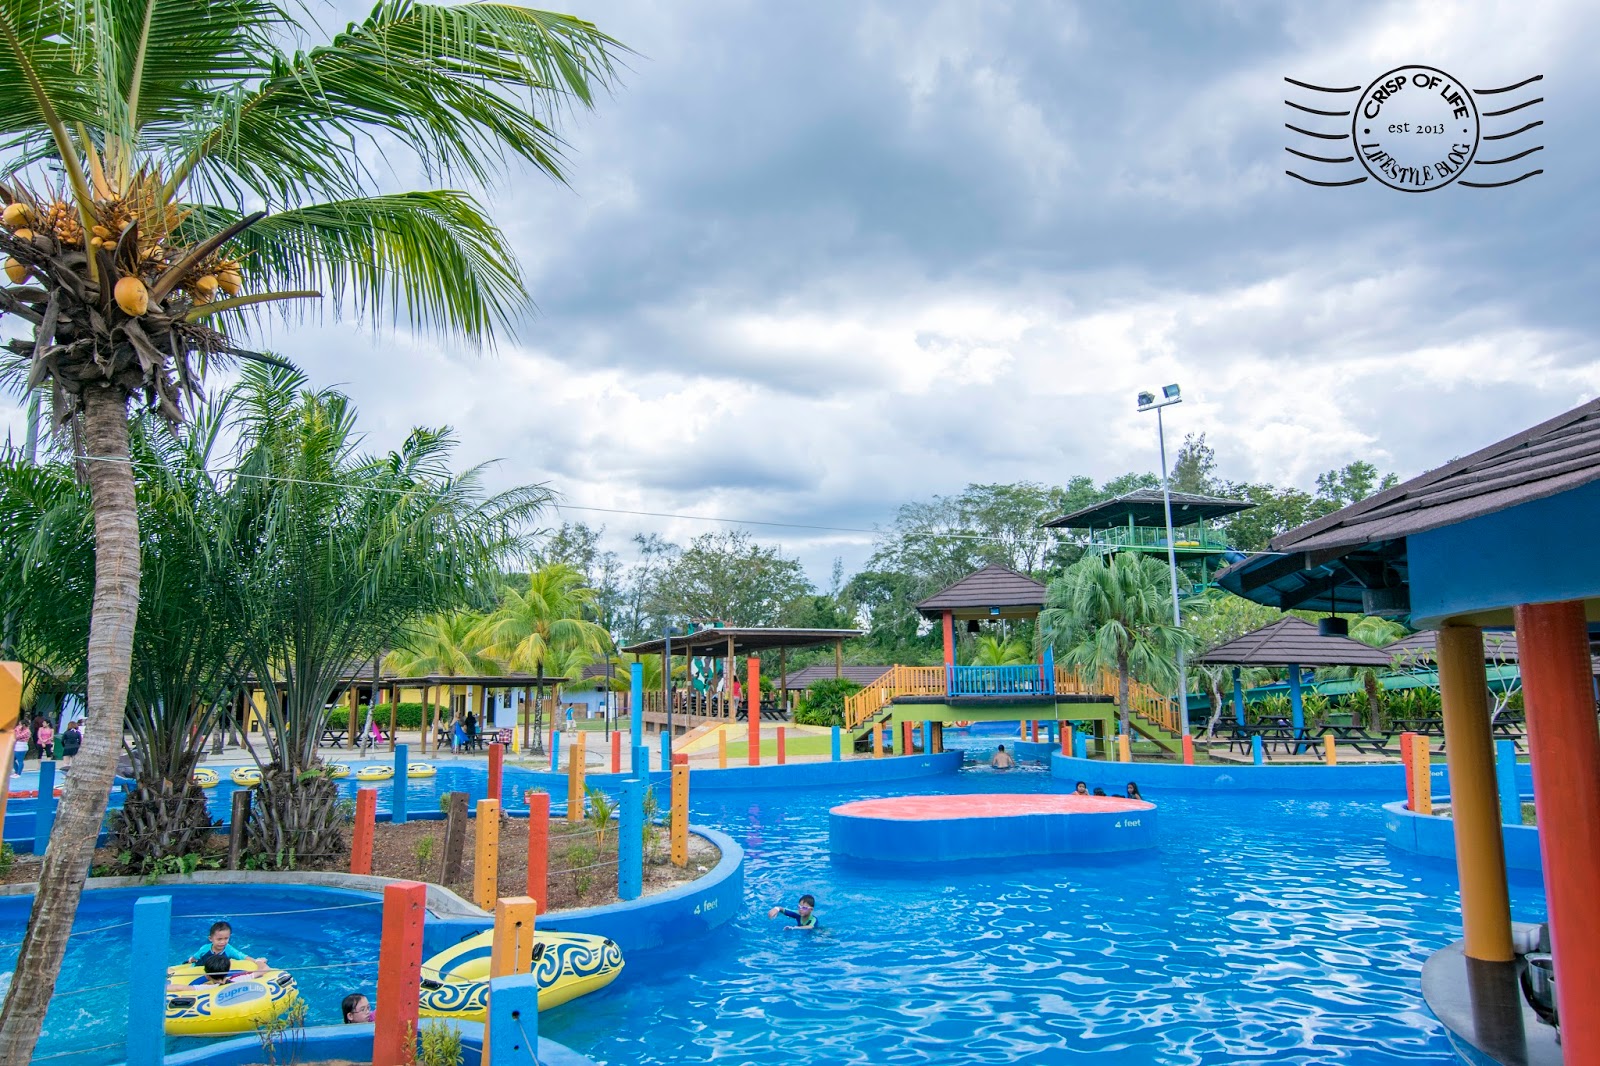 The Carnivall Waterpark @ Sungai Petani, Kedah - Crisp of Life